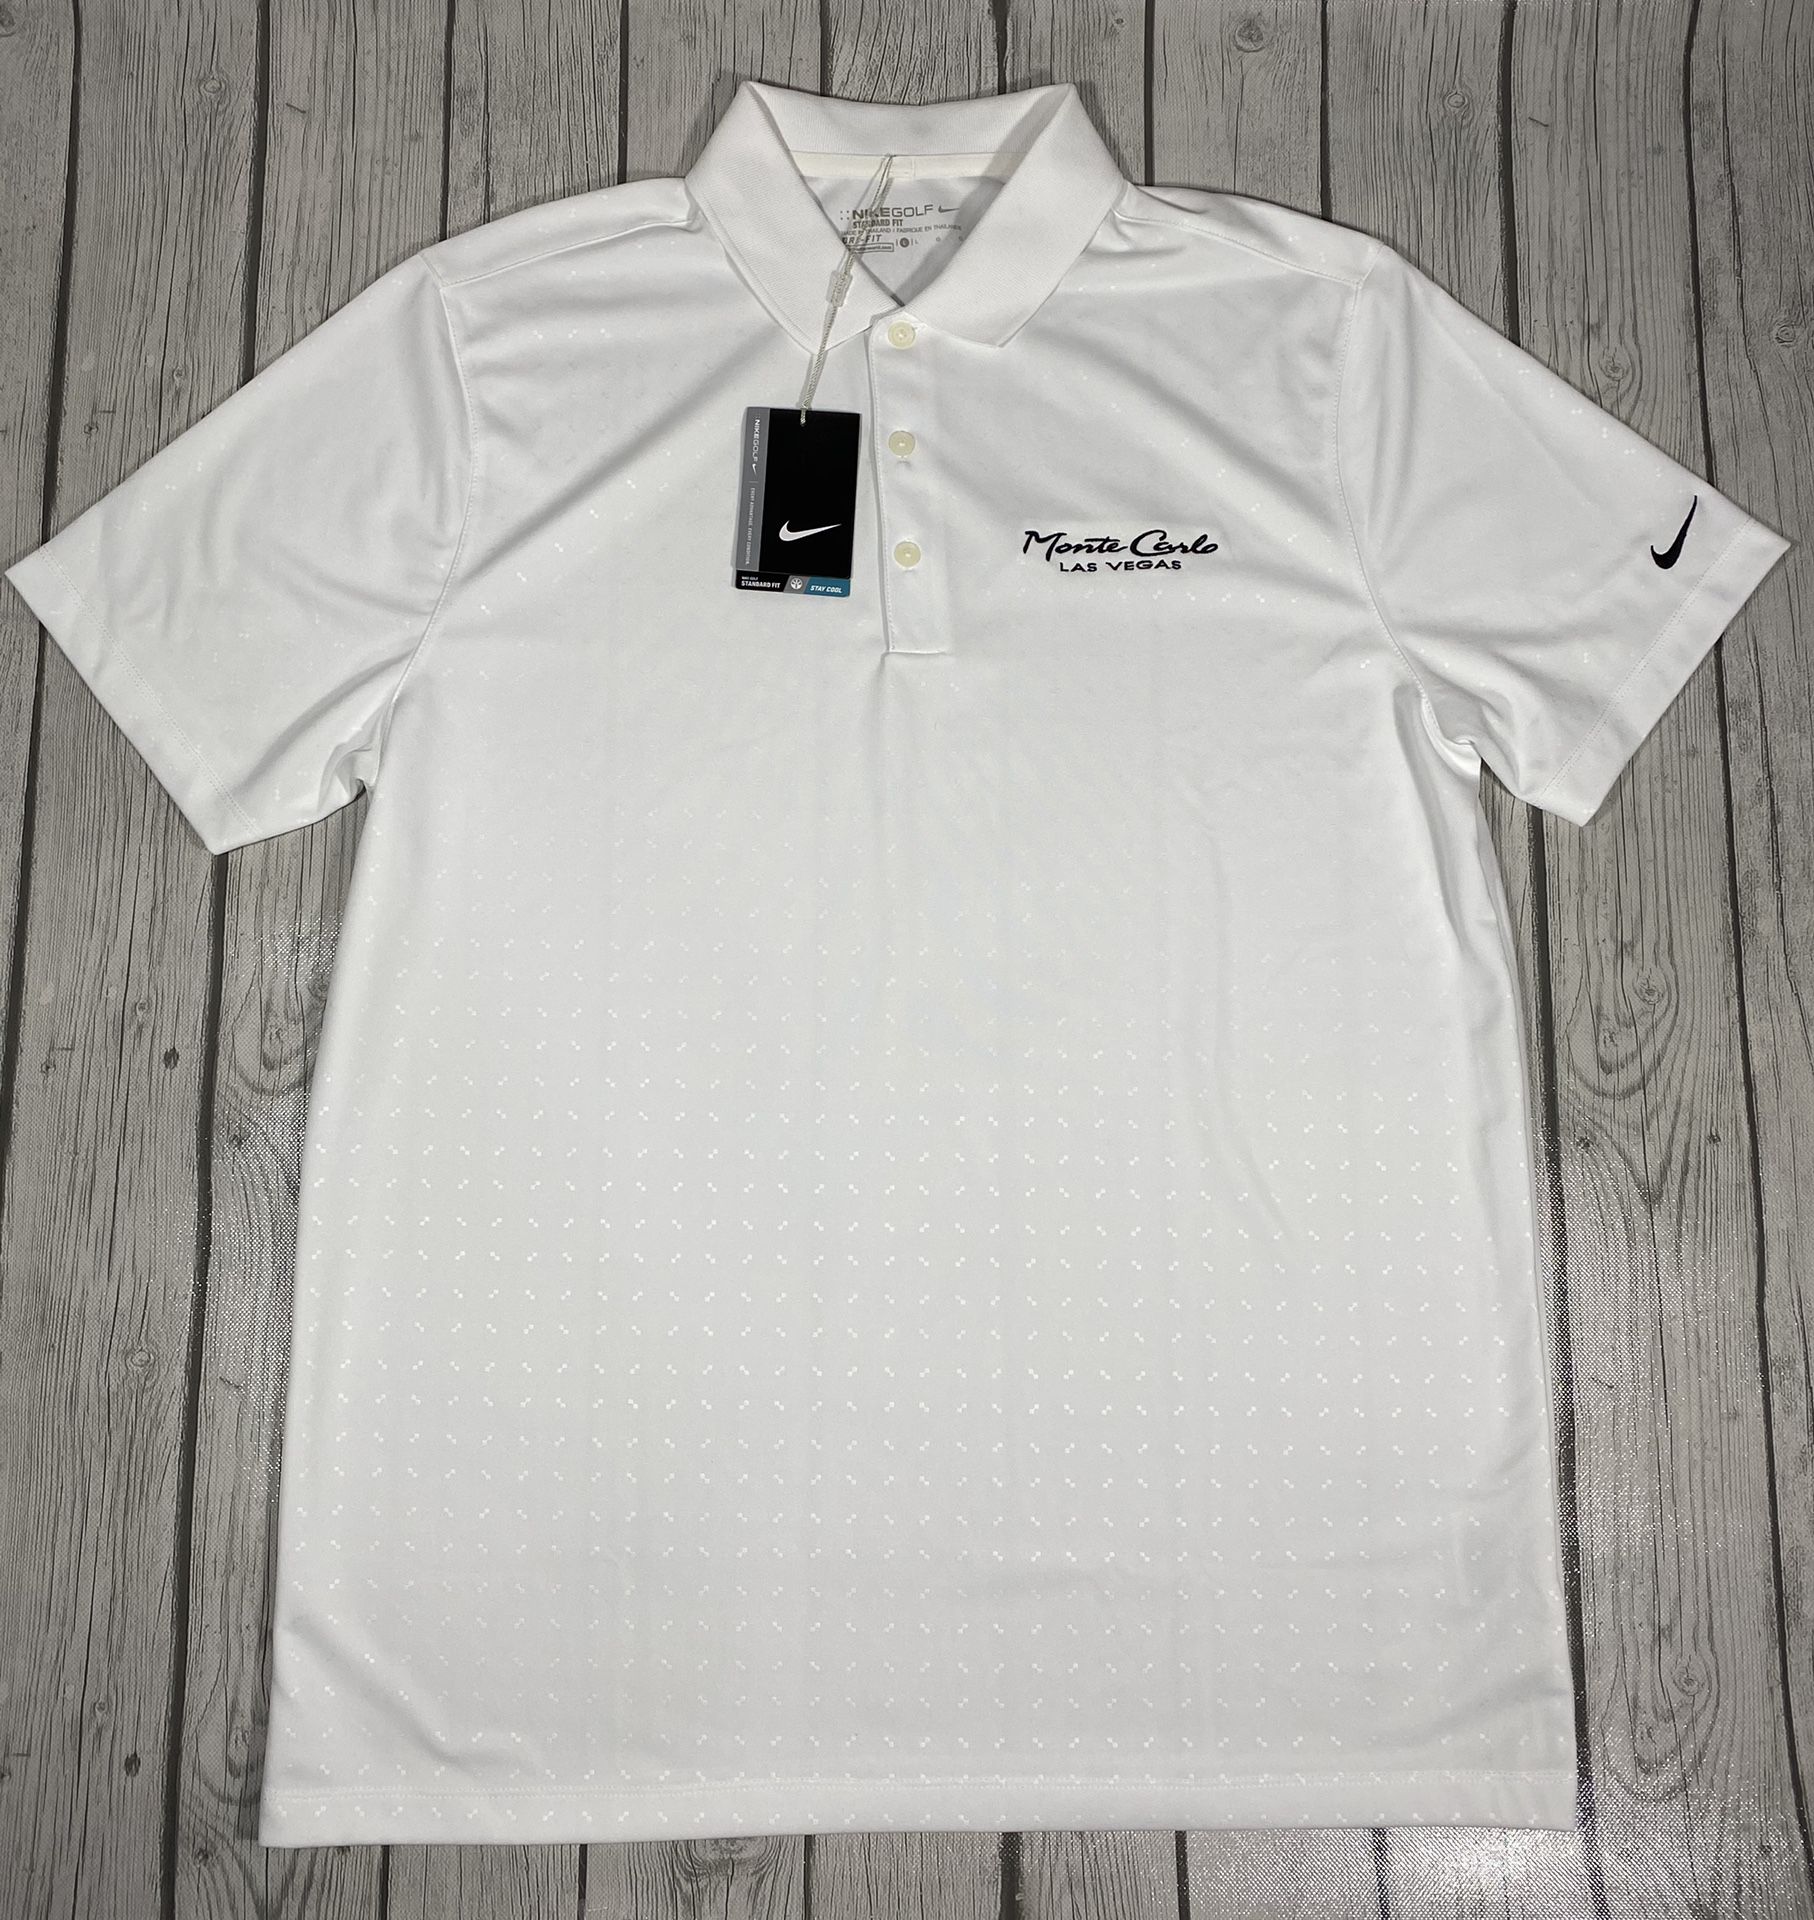 Nike Golf Dri-Fit White Monte Carlo Las Vegas Mens Polo Shirt Sz L $75